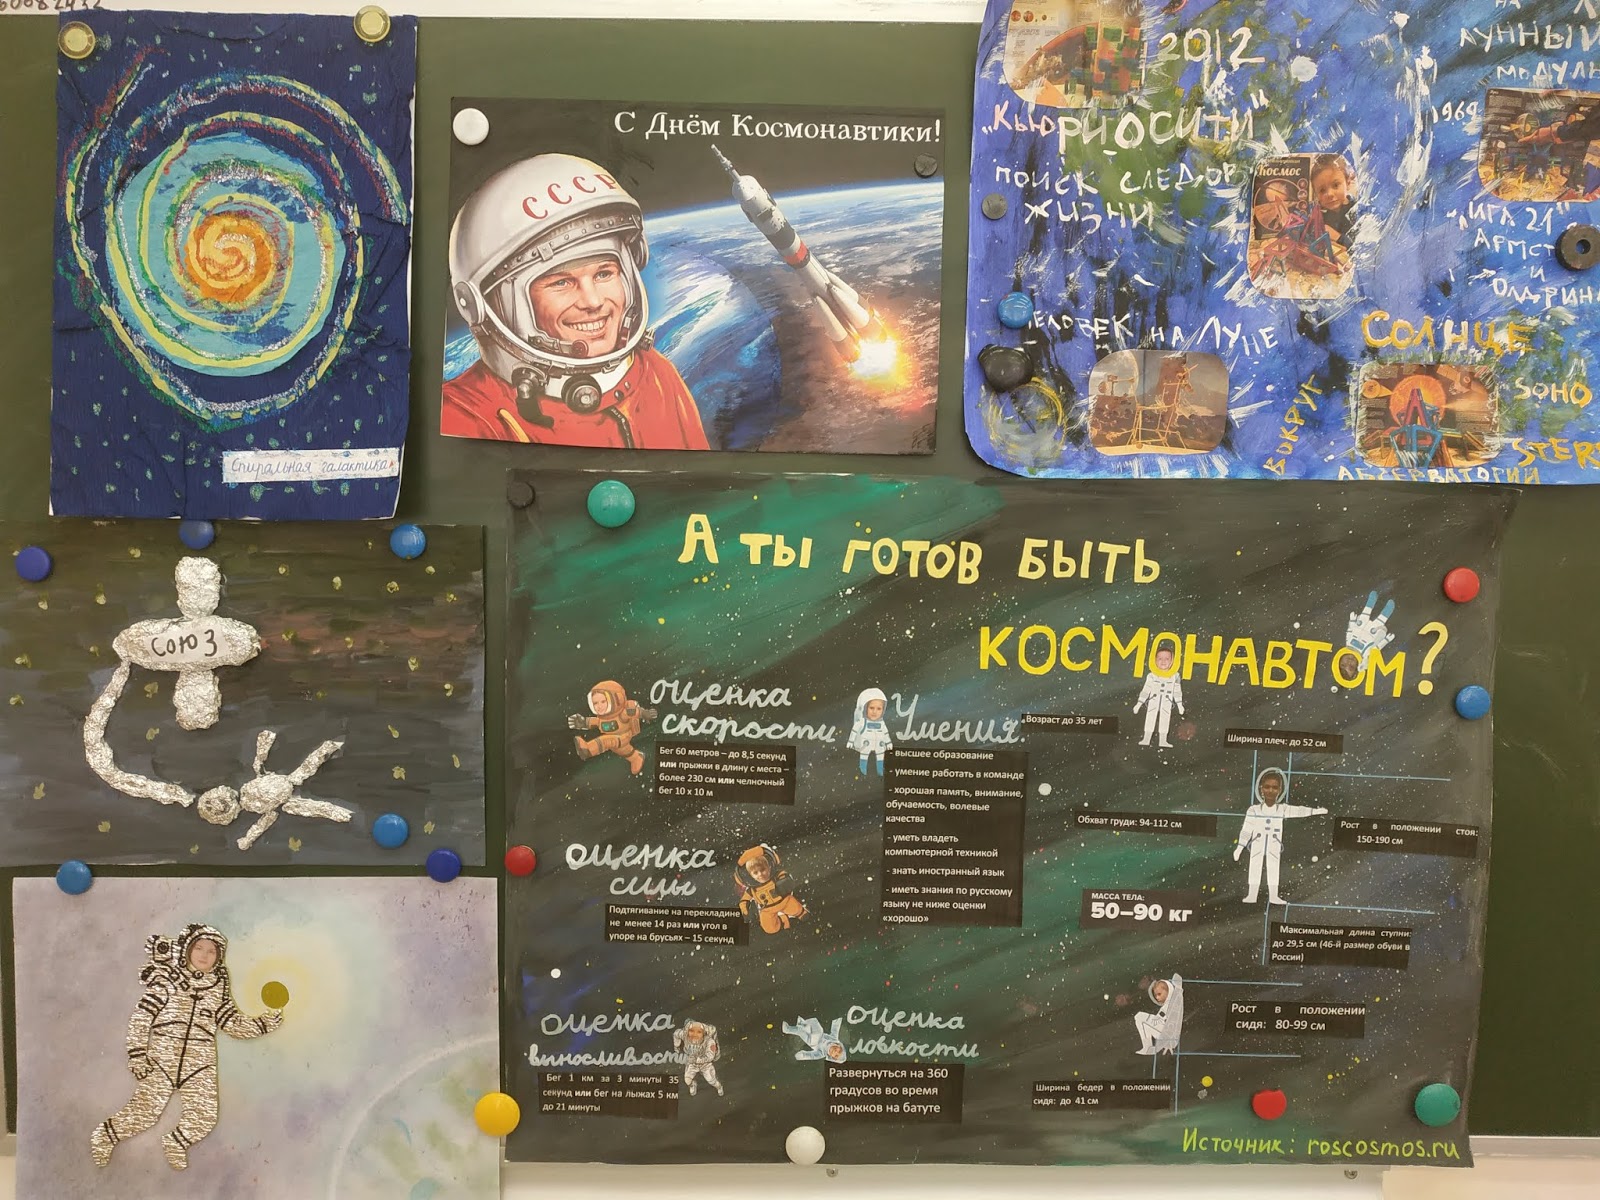 Газета ко дню космонавтики. Плакат "день космонавтики". Плакат ко Дню космонавтики в школе. Плакат ко Дню космоса.